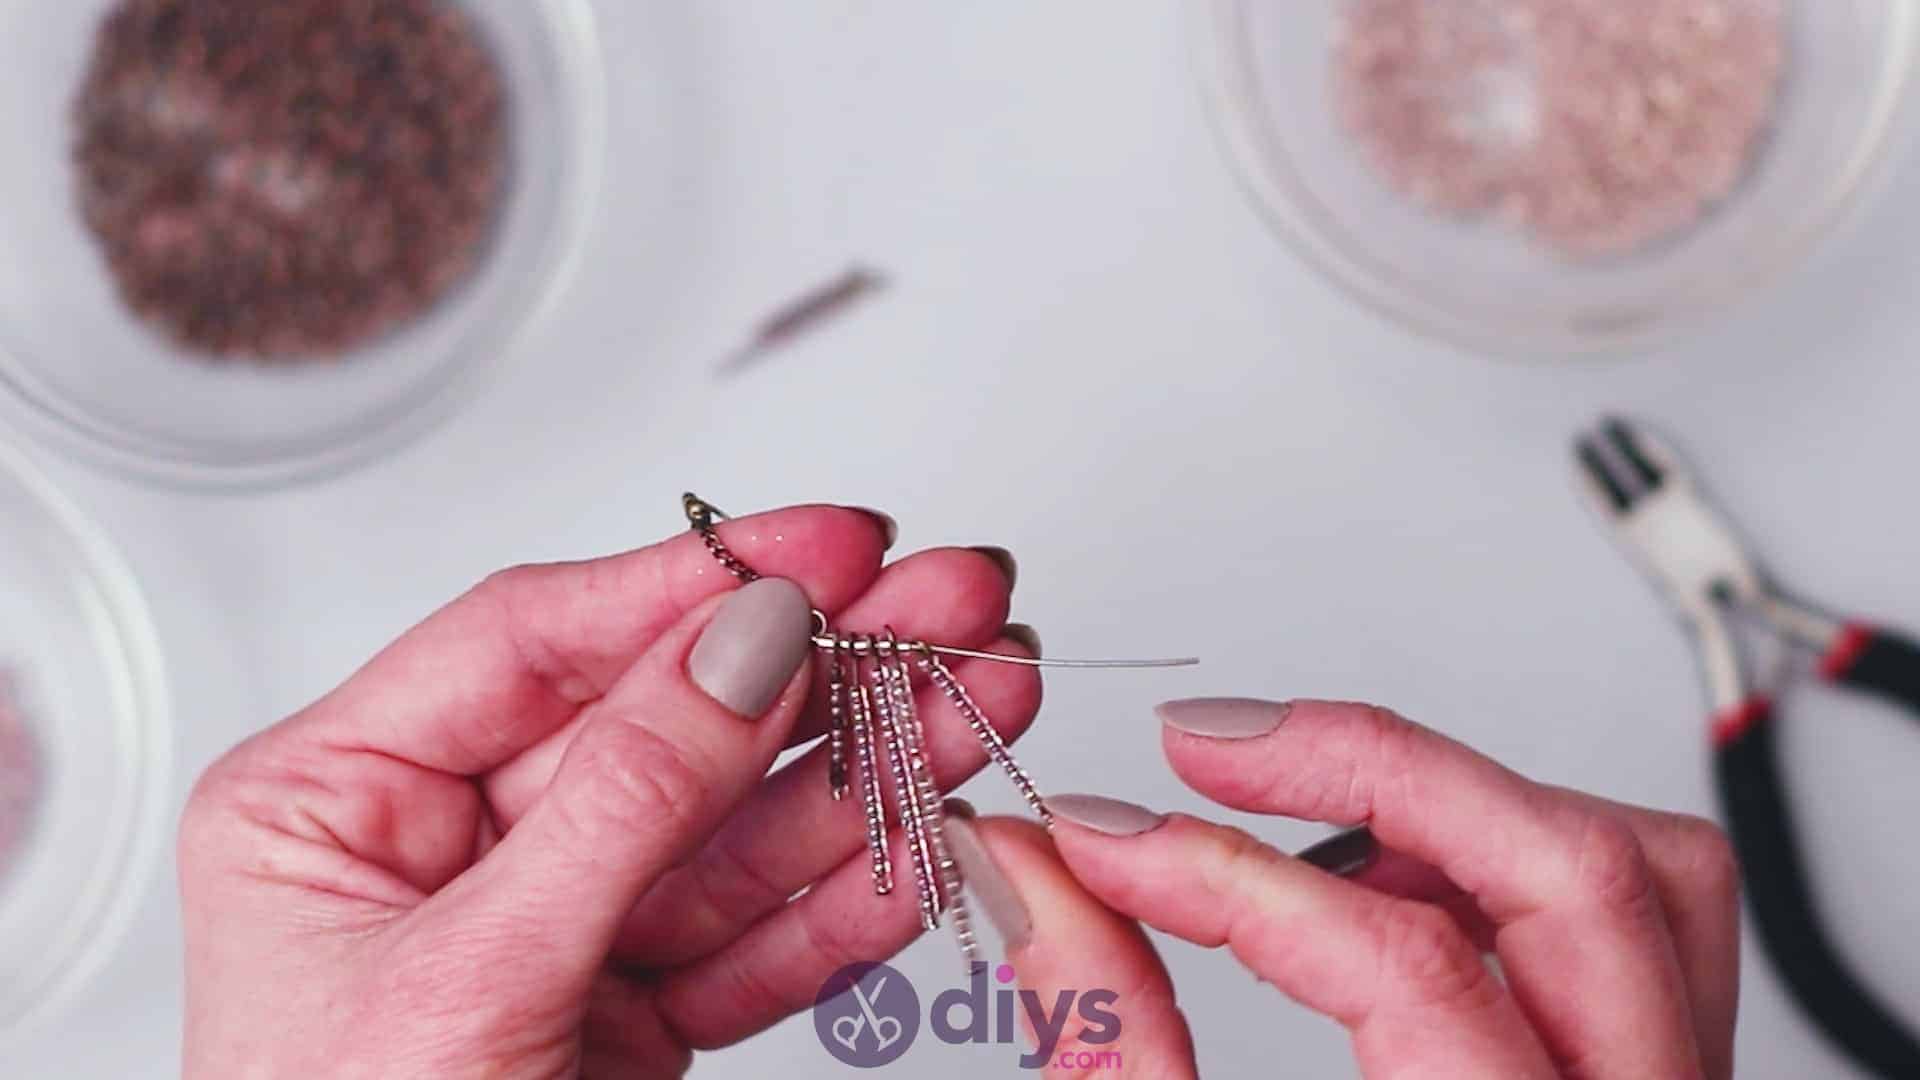 Diy seed bead fringe earrings step 6d